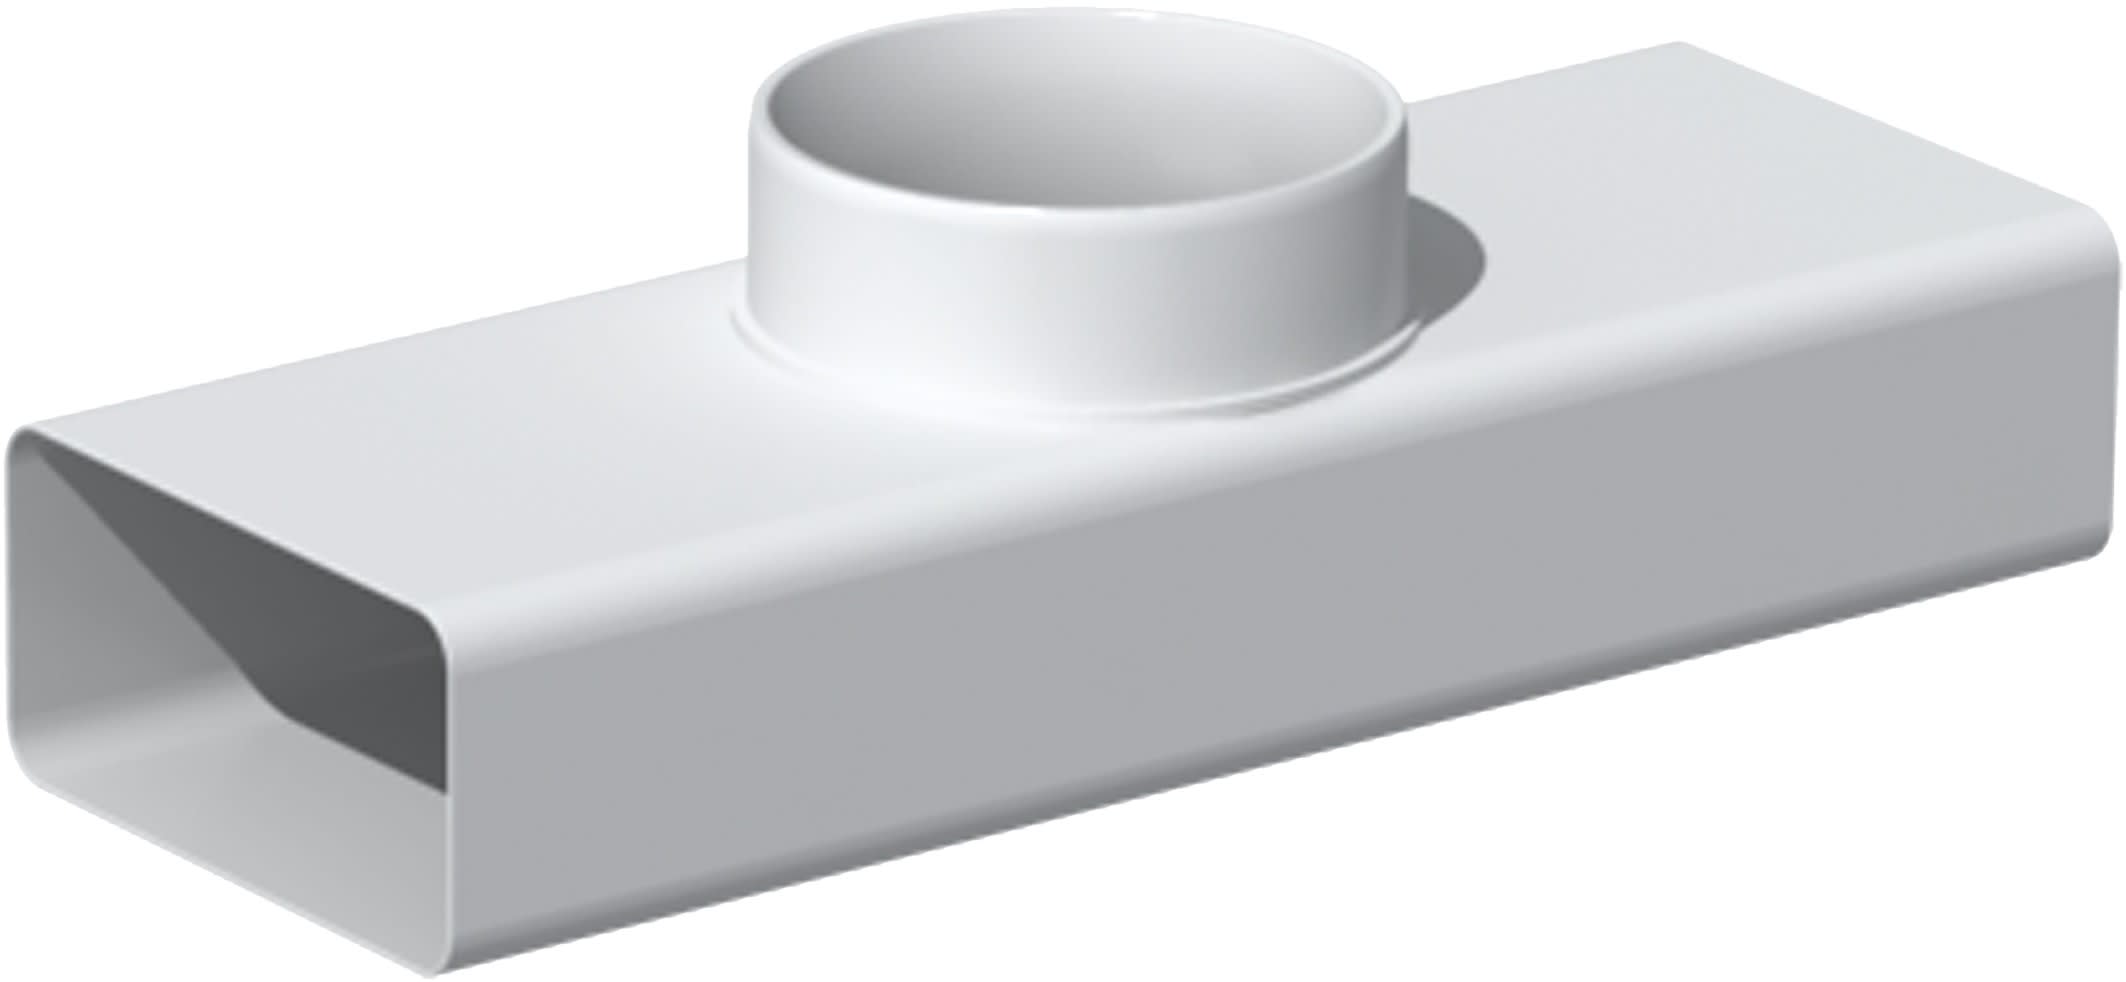 S&P - Té mixte PVC rigide rectangulaire 55 x 220 mm/circulaire D 125 mm, gamme TUBPLA